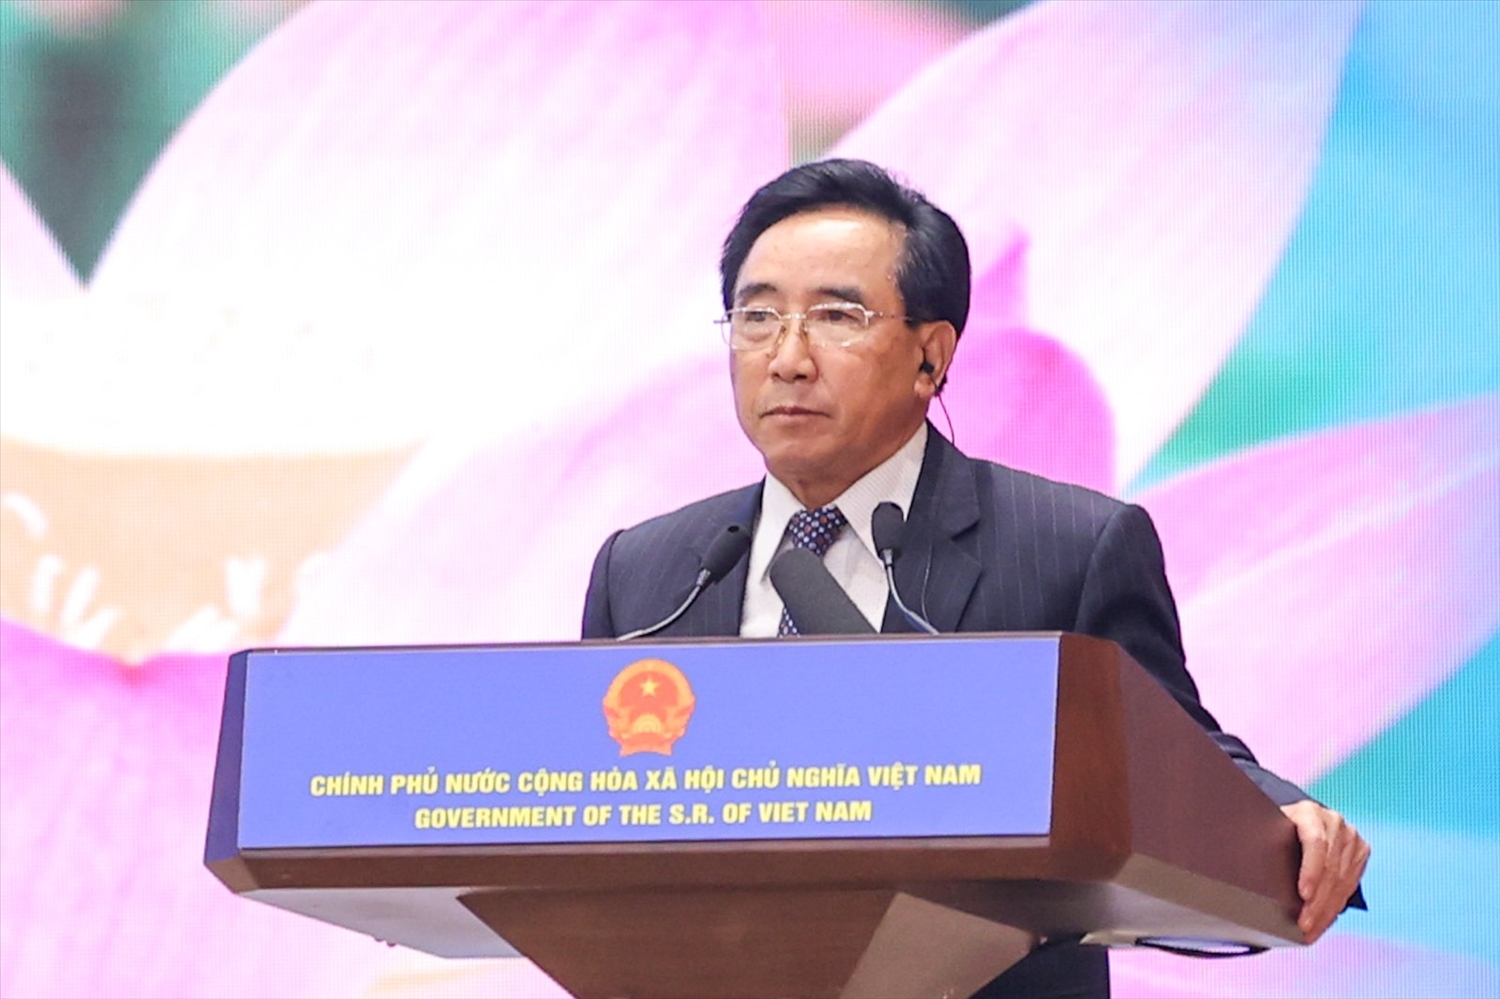 Thủ tướng Phankham Viphavanh bày tỏ mong muốn có ngày càng có nhiều doanh nghiệp Việt Nam đầu tư tại Lào, đưa Việt Nam trở thành nhà đầu tư lớn thứ hai hoặc thứ nhất tại Lào. - Ảnh: VGP/Nhật Bắc